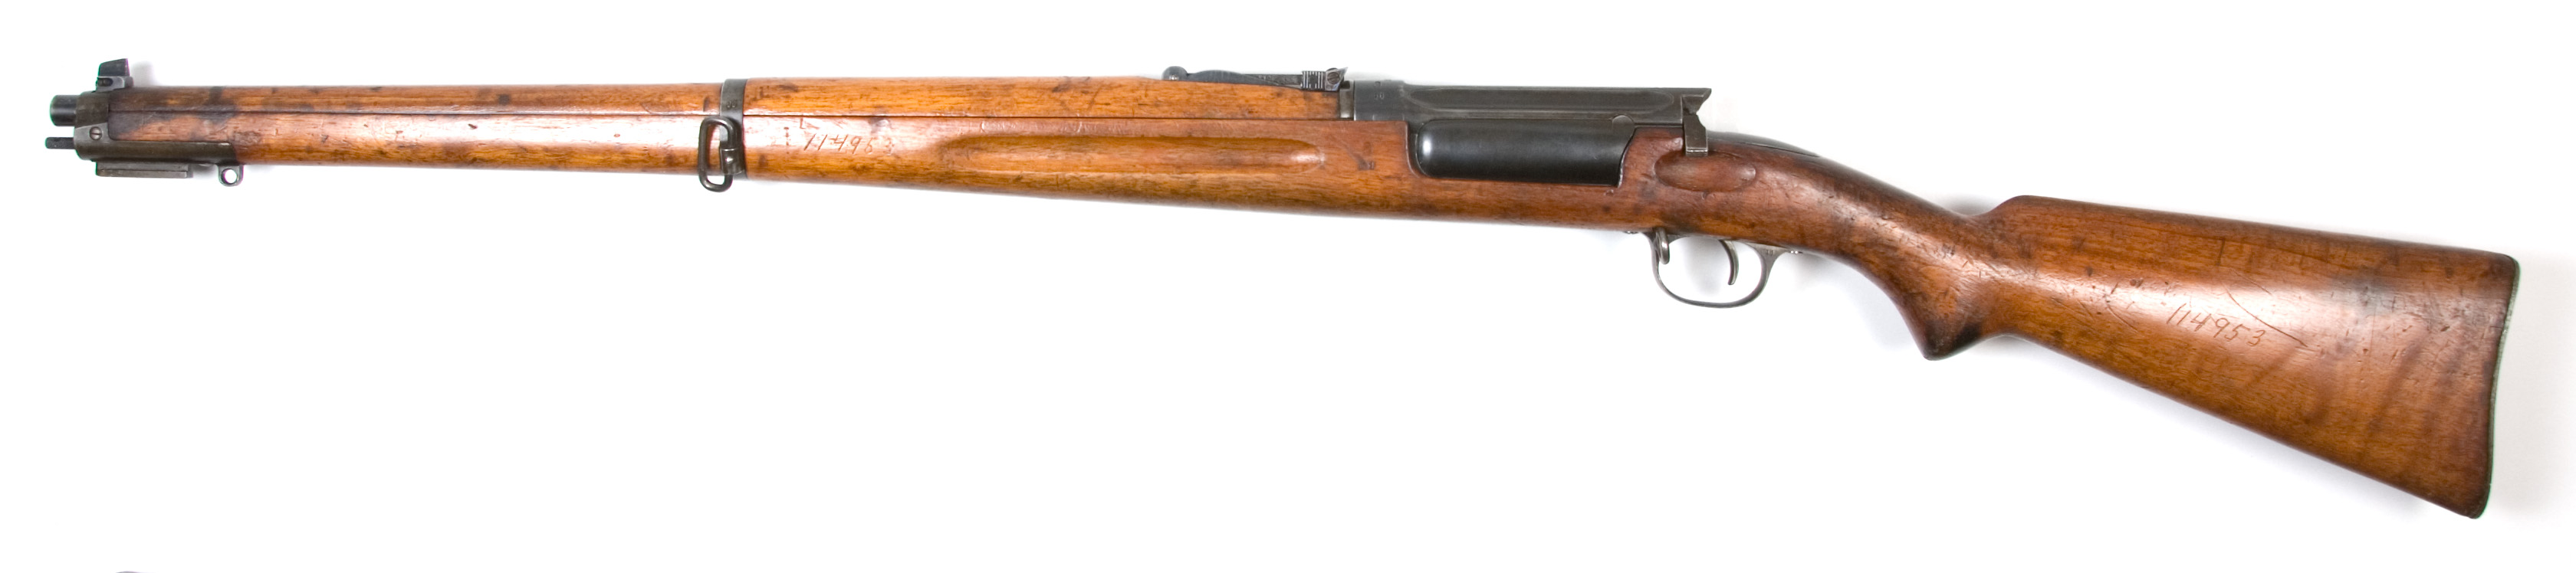 ./guns/rifle/bilder/Rifle-Kongsberg-Krag-M1912-prove-11-2.jpg